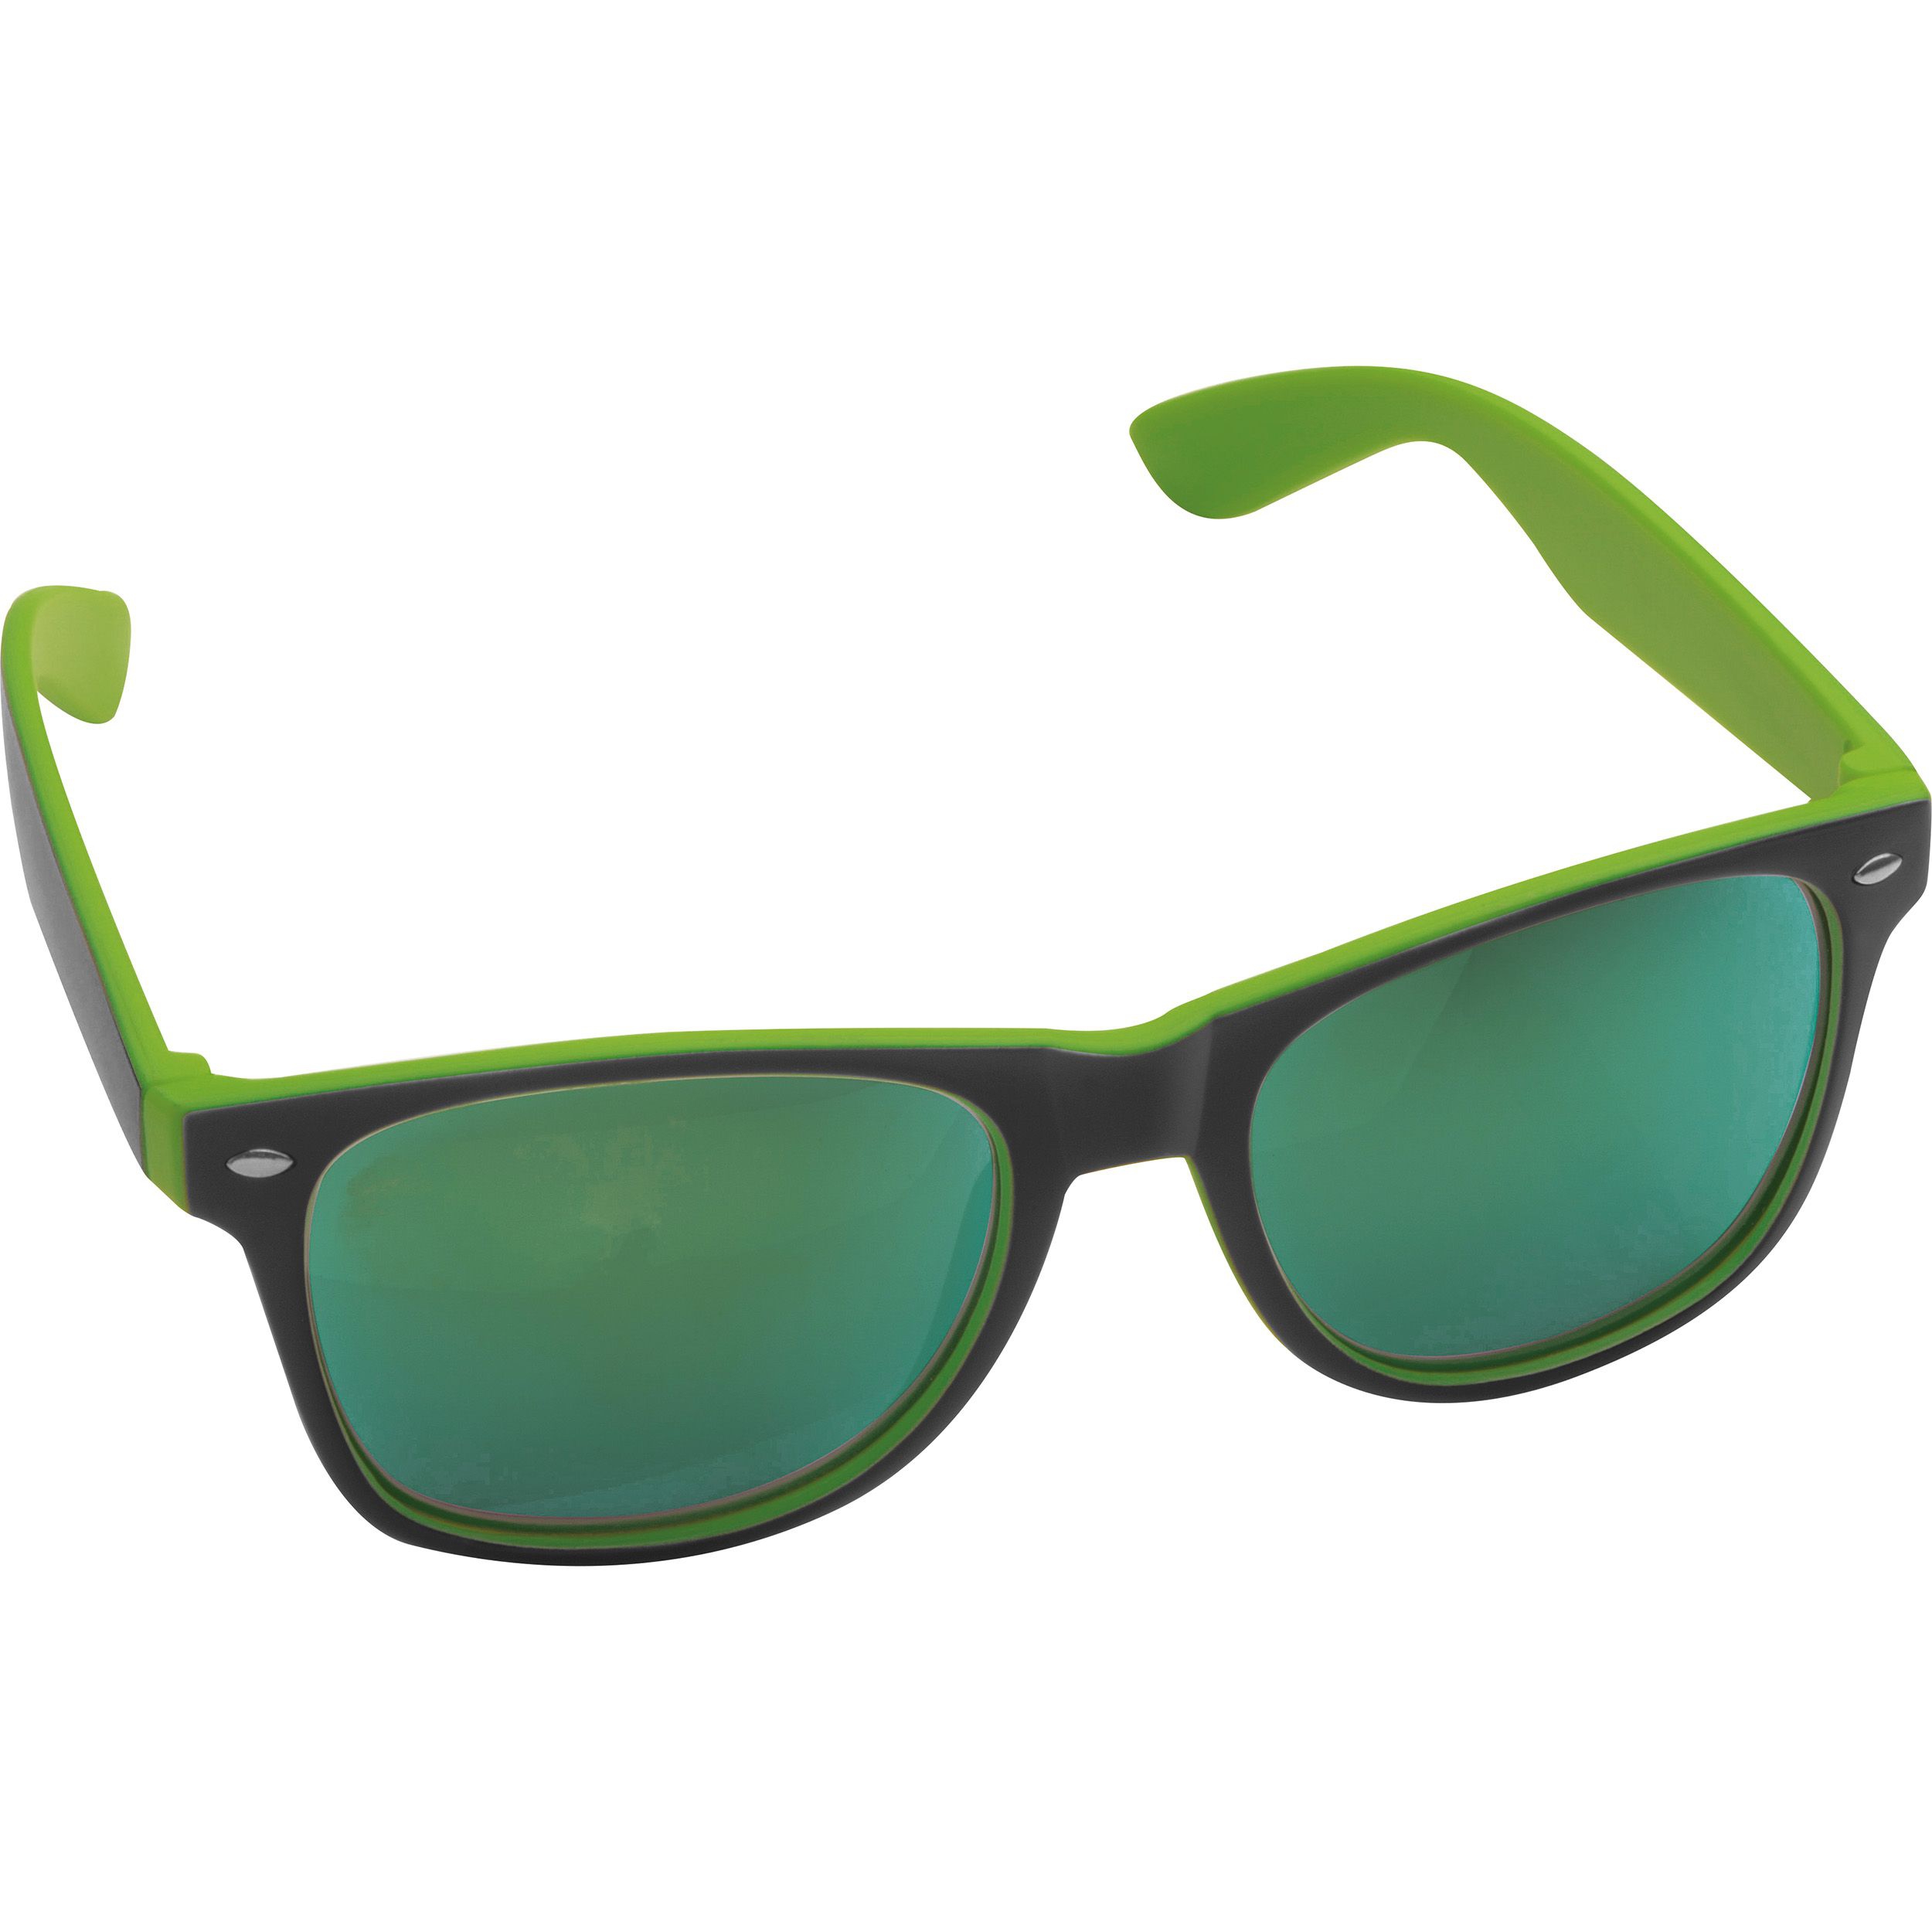 Sonnenbrille aus Kunststoff mit verspiegelten Gläsern, UV 400 Schutz, grün